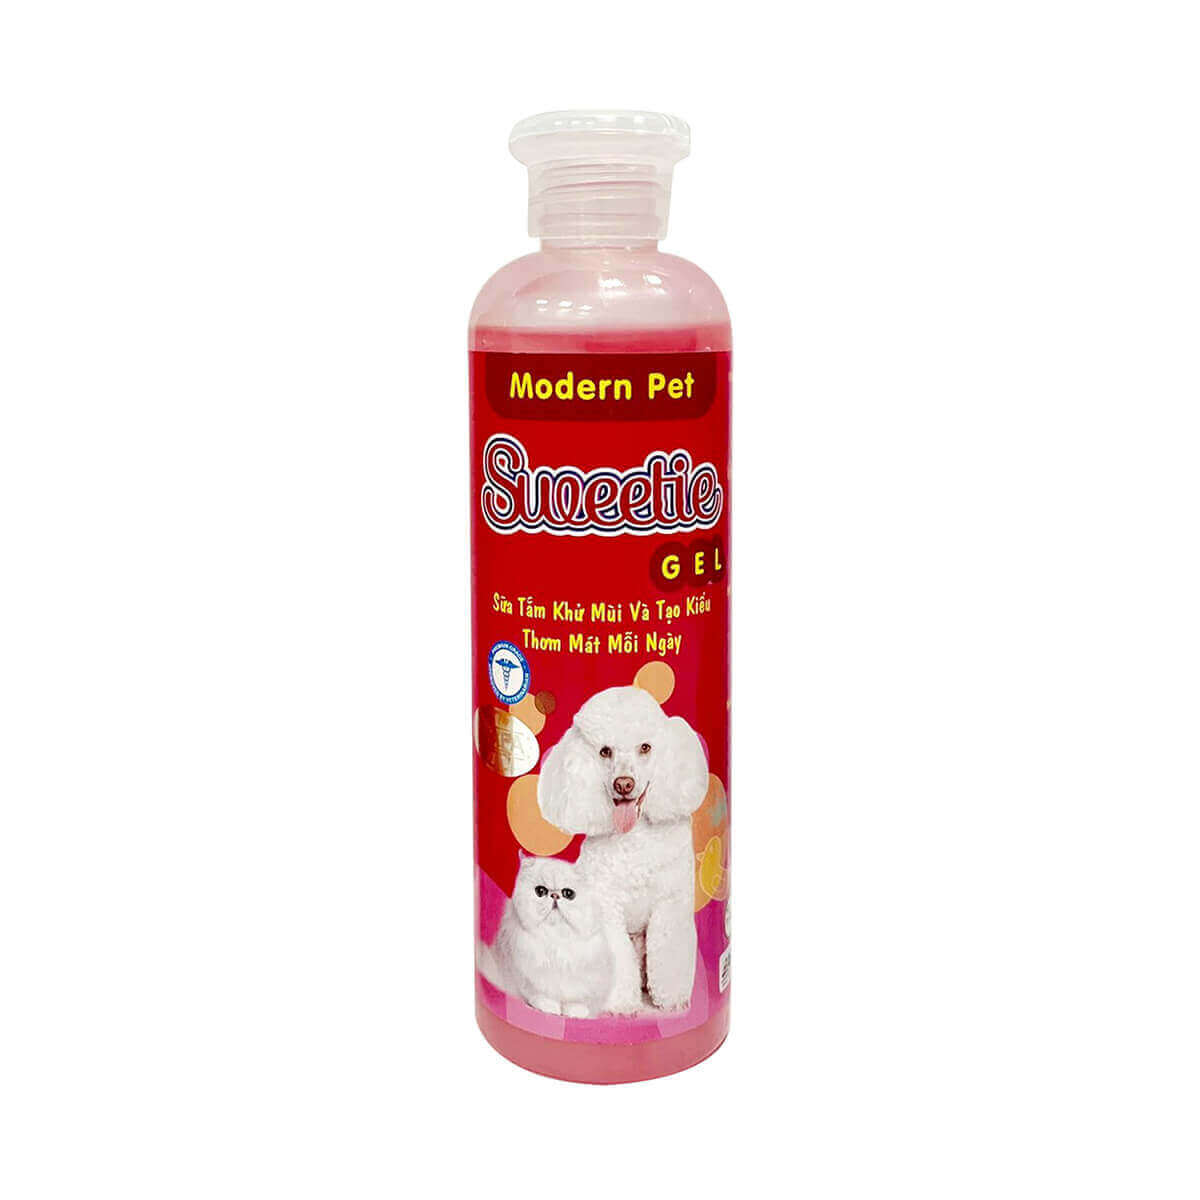 sữa tắm modern pet sweetie gel khử mùi tạo kiểu cho chó mèo